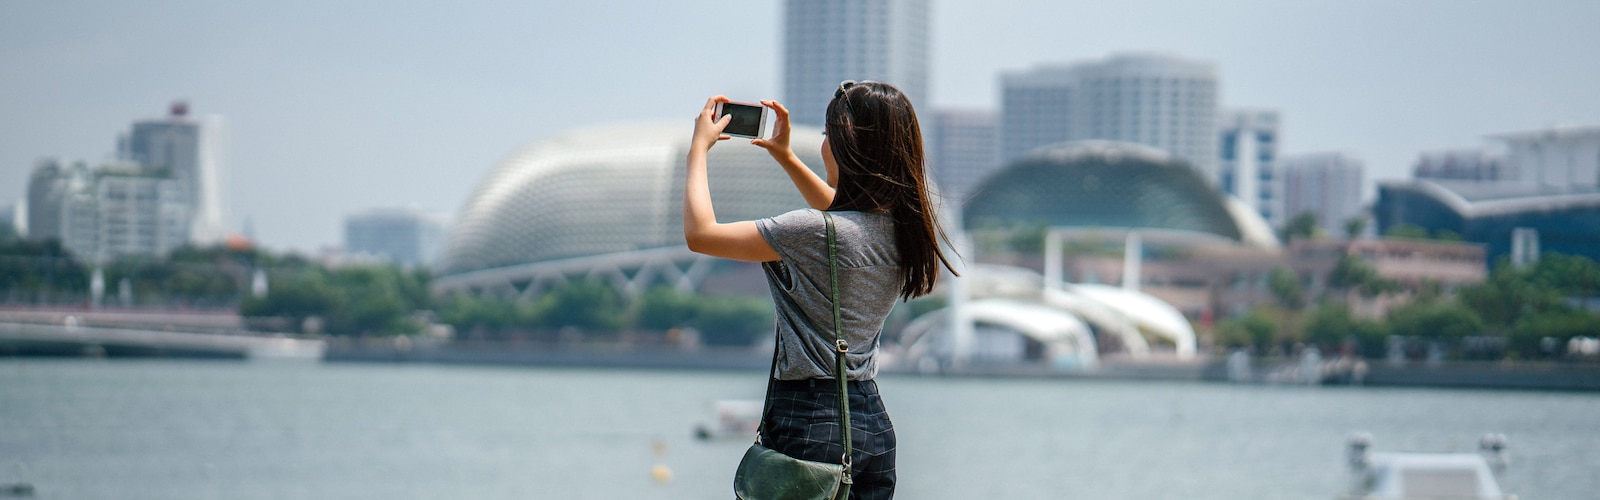 Женщина фотографирует городскую панораму на iphone